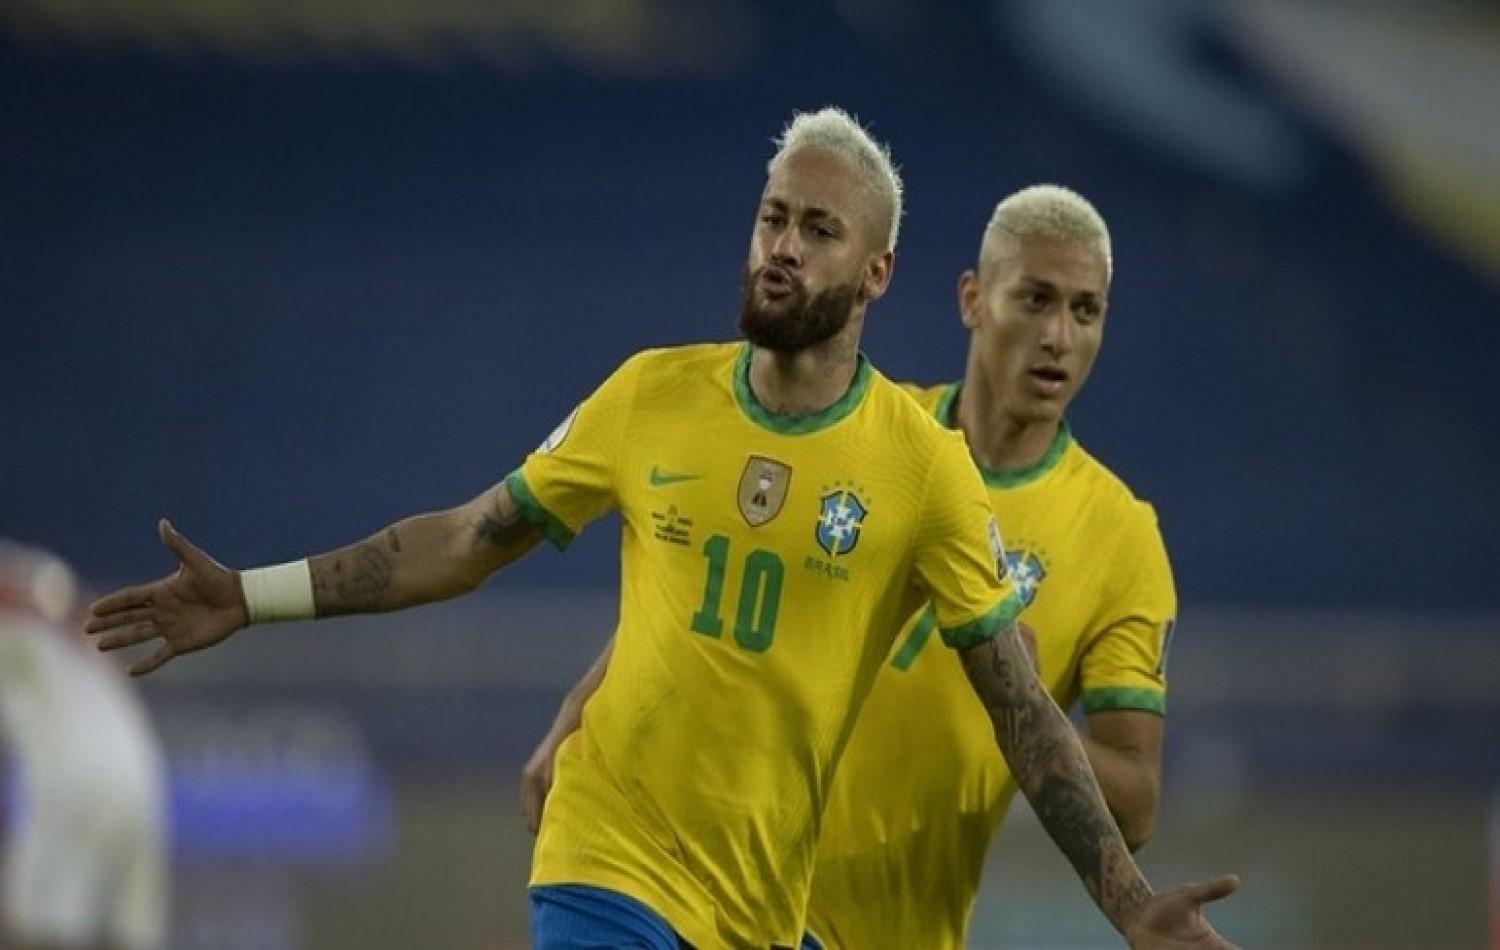 Brasil x Chile: prováveis times para quartas da Copa América